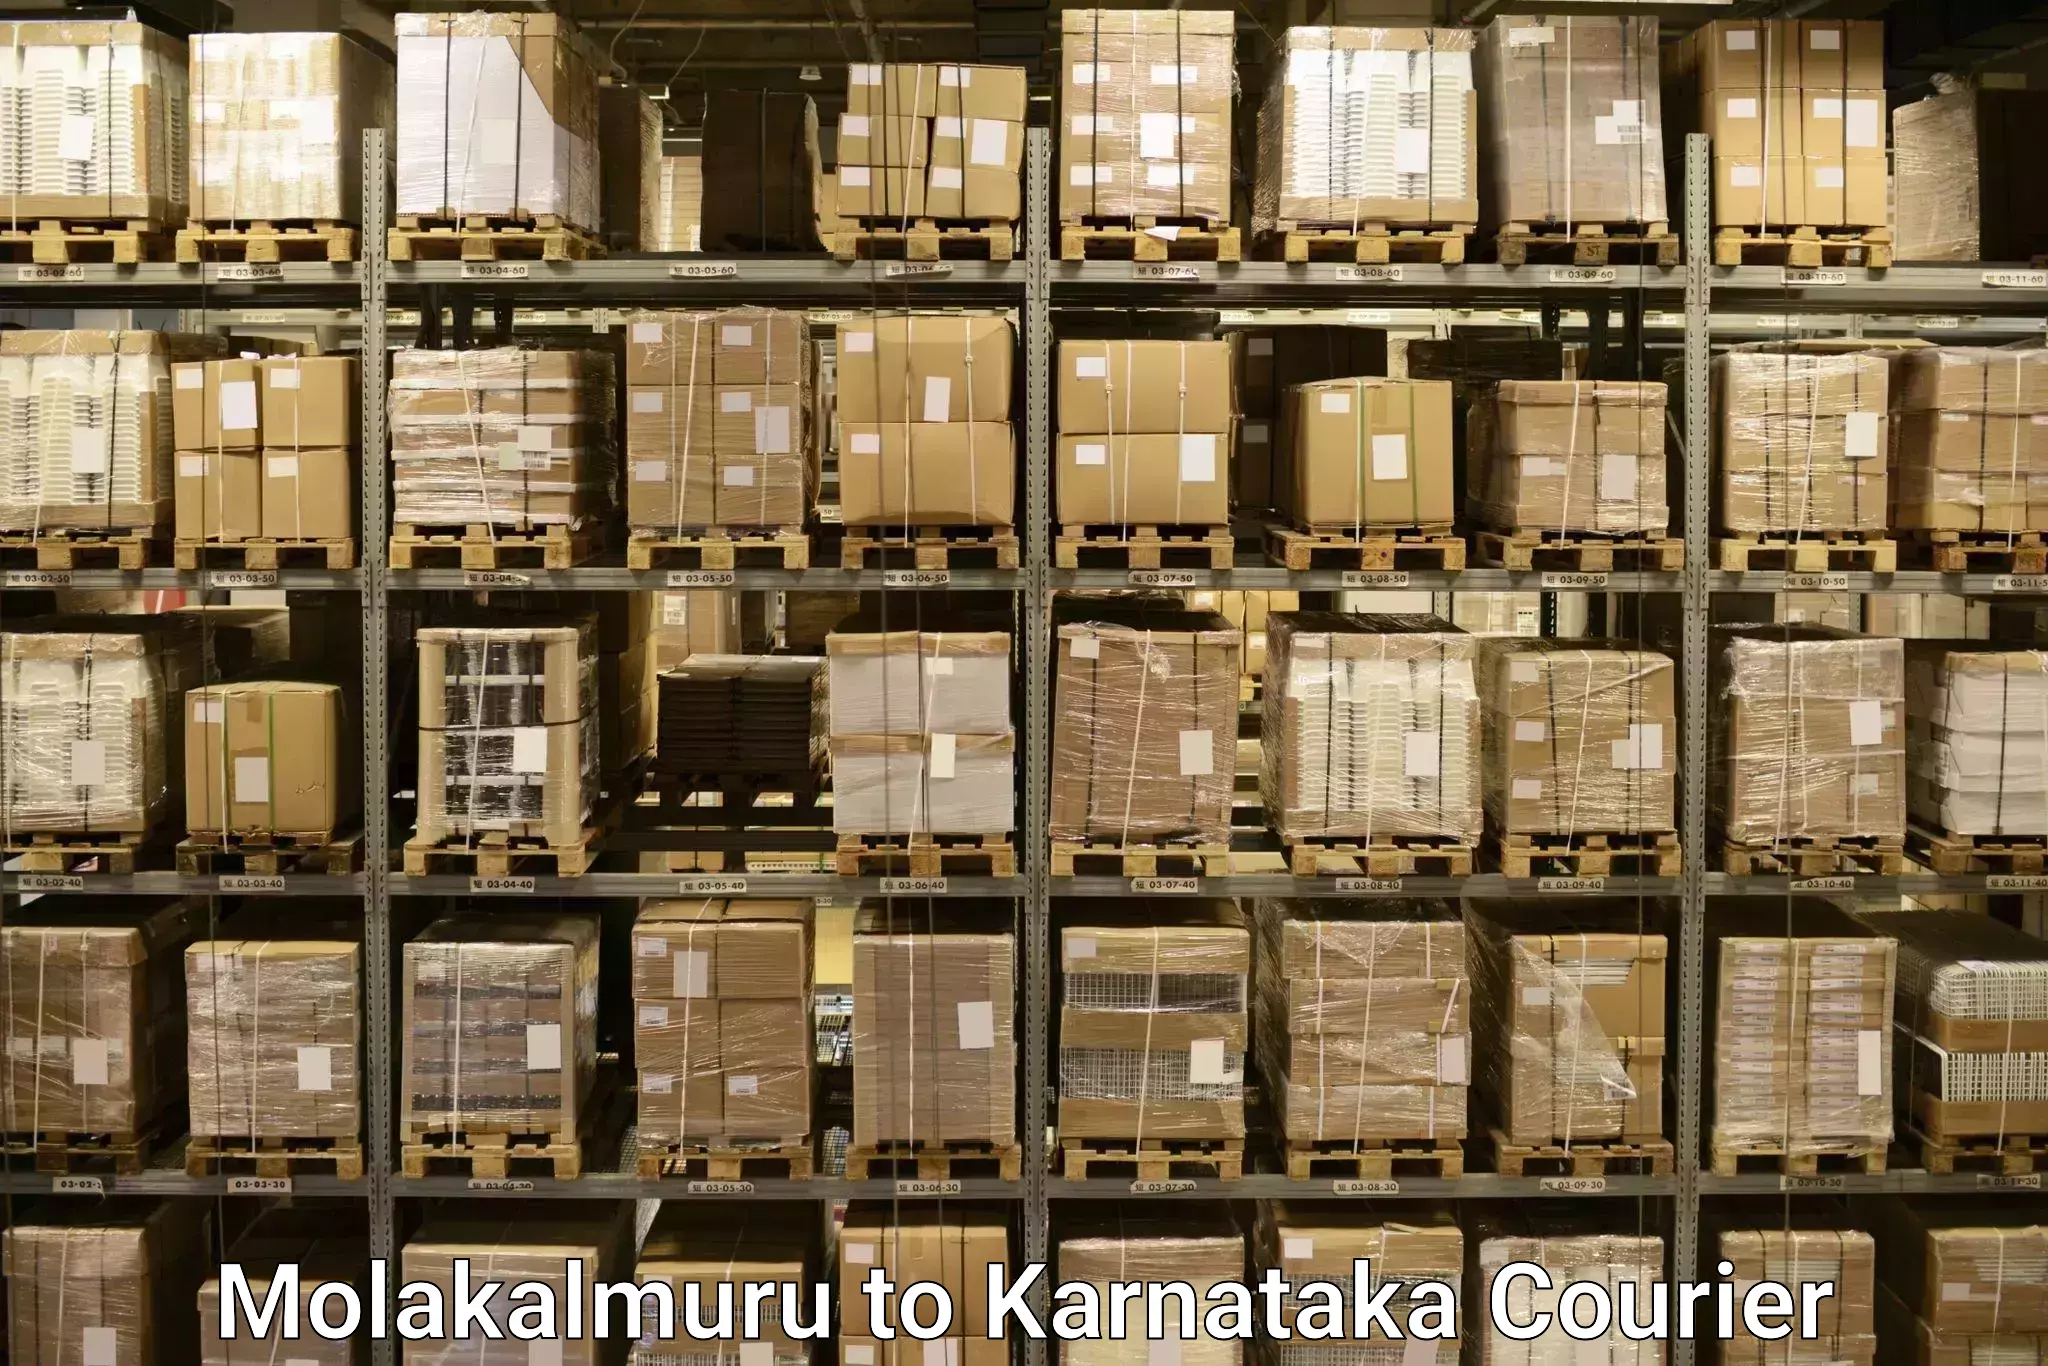 Baggage courier service Molakalmuru to Karnataka